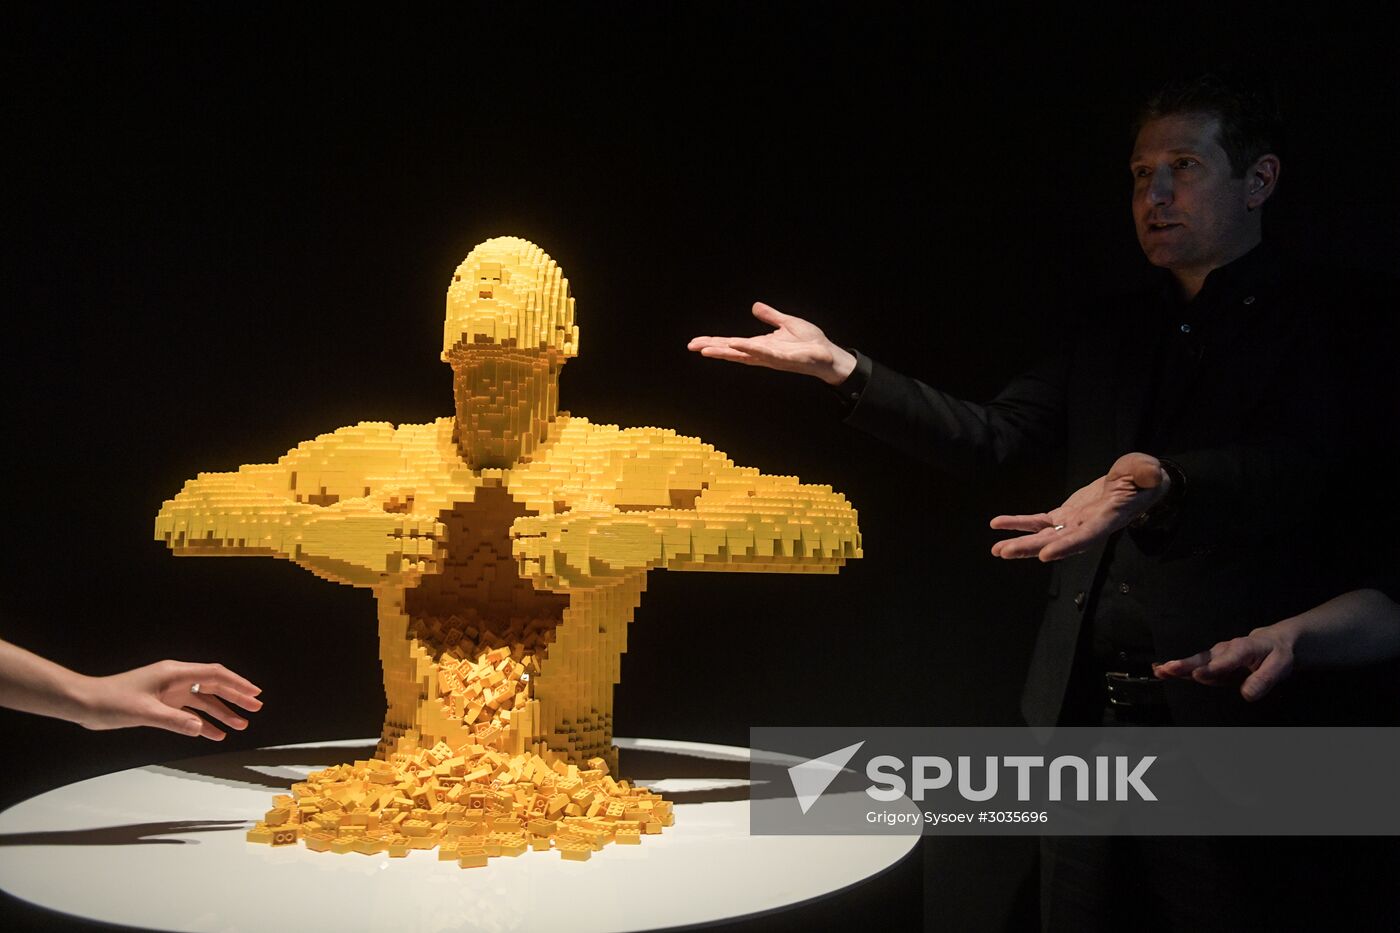 Exhibition "LEGO Art"